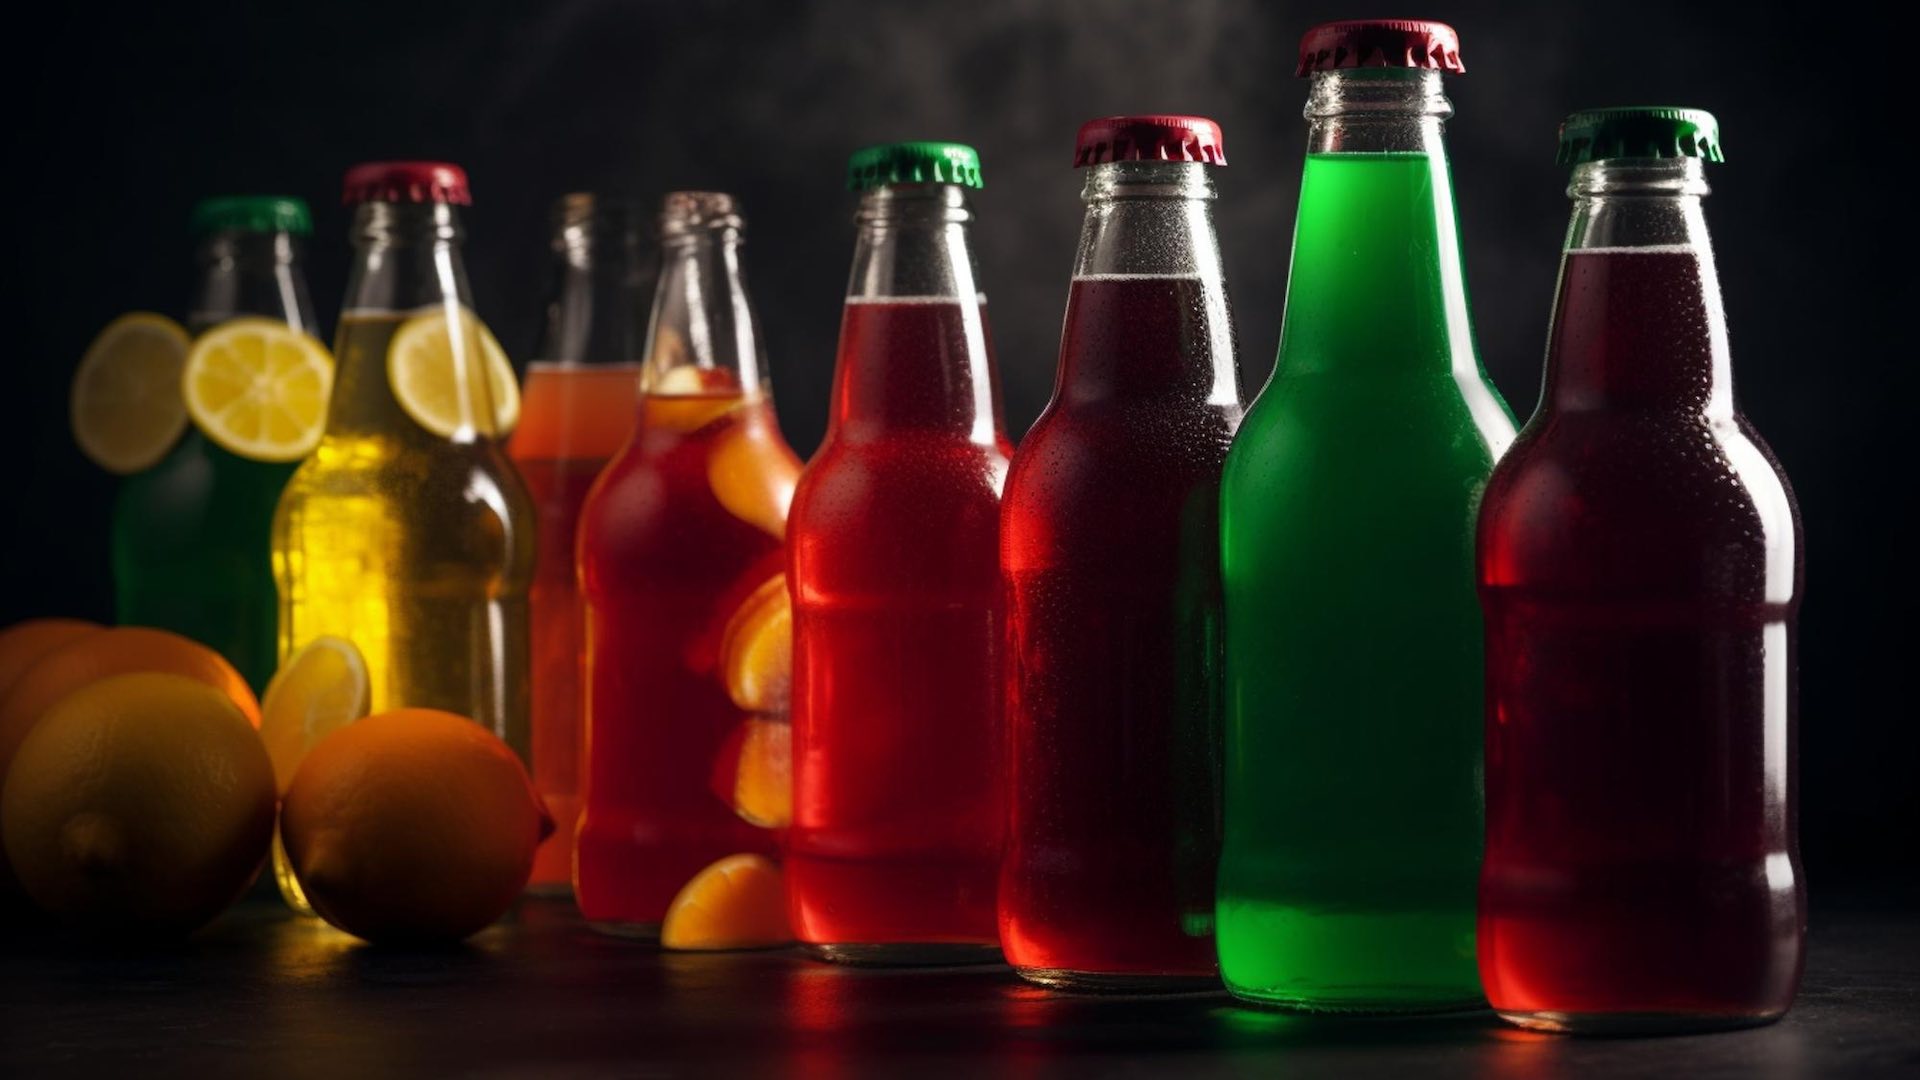 إدارة الغذاء والدواء تحظر مادة الزيت النباتي البروميني بالمشروبات الغازية